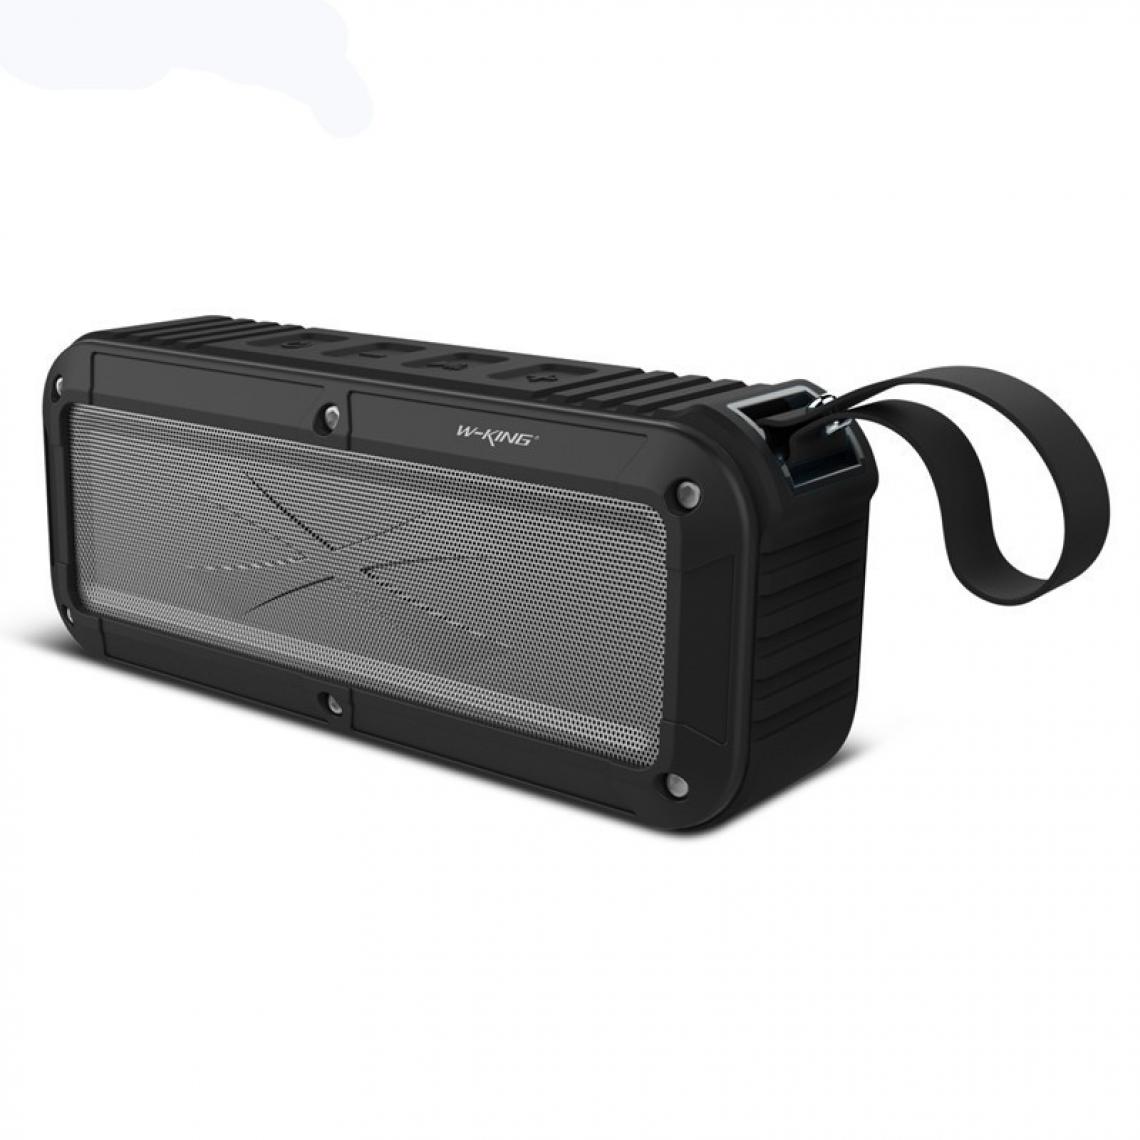 Wewoo - Enceinte Bluetooth étanche S20 Loundspeakers IPX6 Haut-parleur portable NFC pour extérieur / Douche / Radio FM à vélo noir - Enceintes Hifi